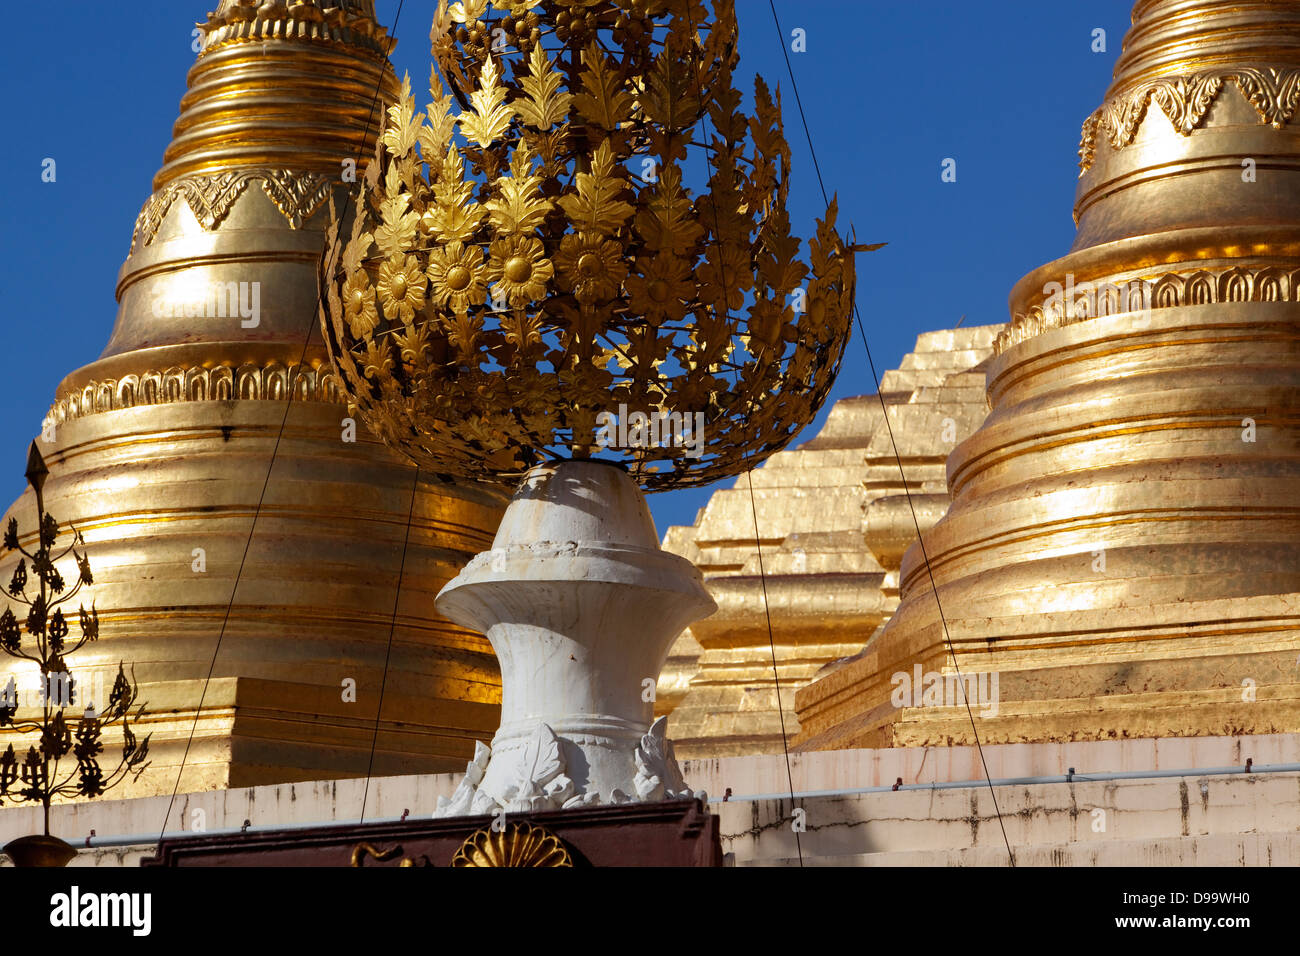 Goldene Stupas der Shwedagon Paya (buddhistische Tempel) in Rangun (Yangon) Birma (Myanmar). Stockfoto